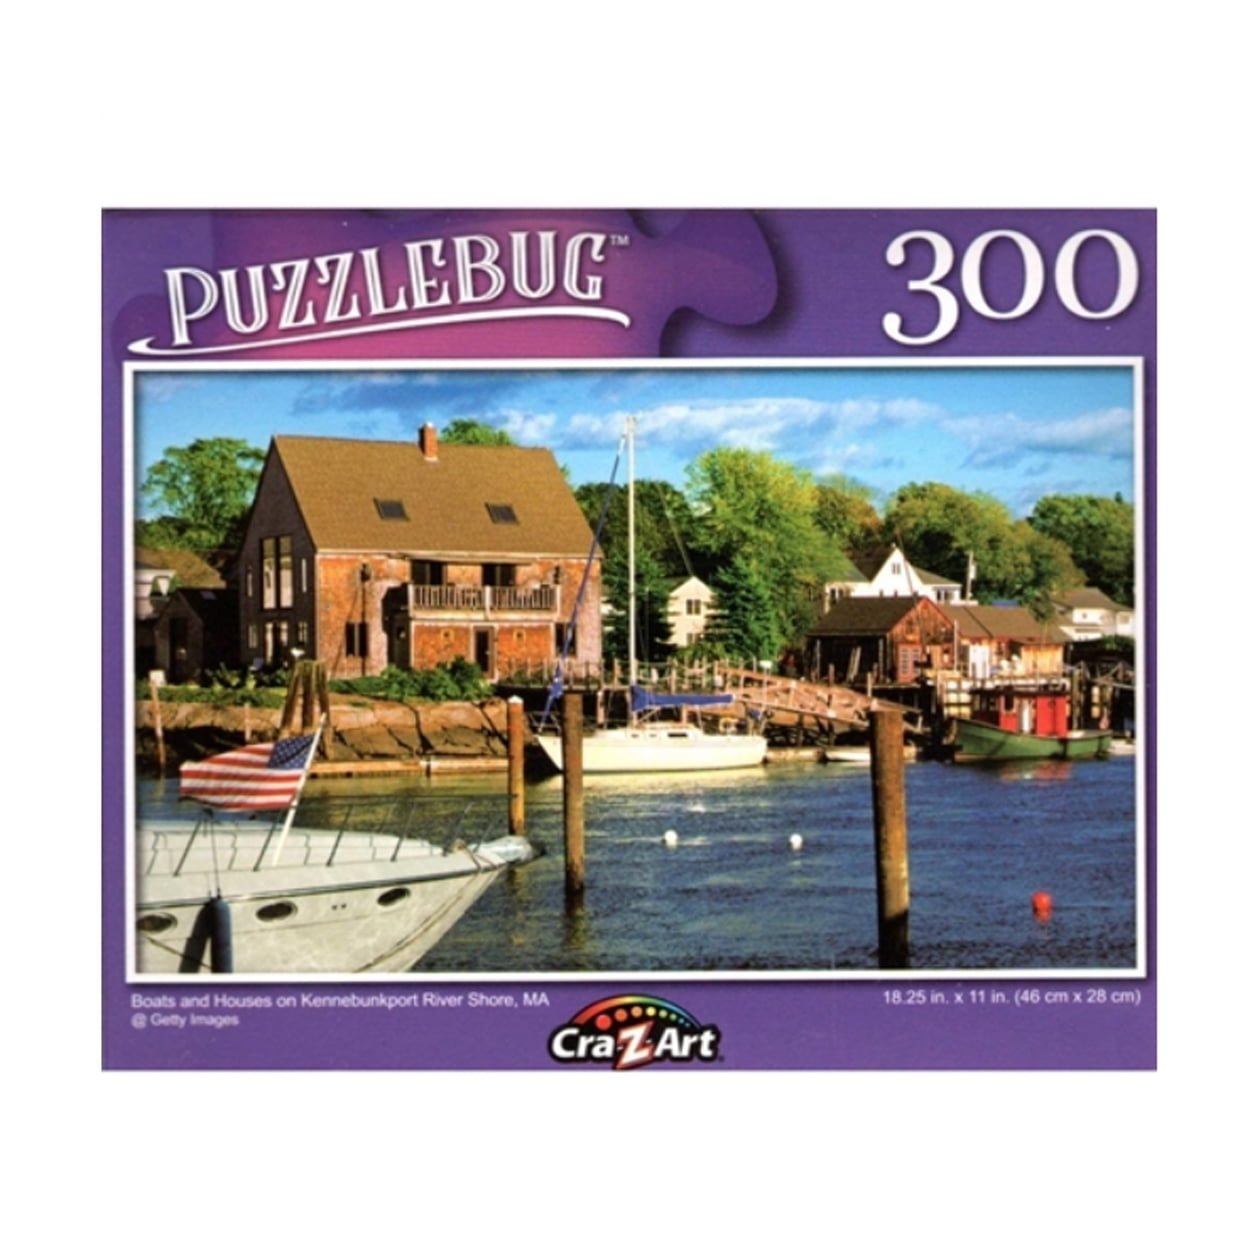 300 Piece Jigsaw Puzzle Puzzlebug 